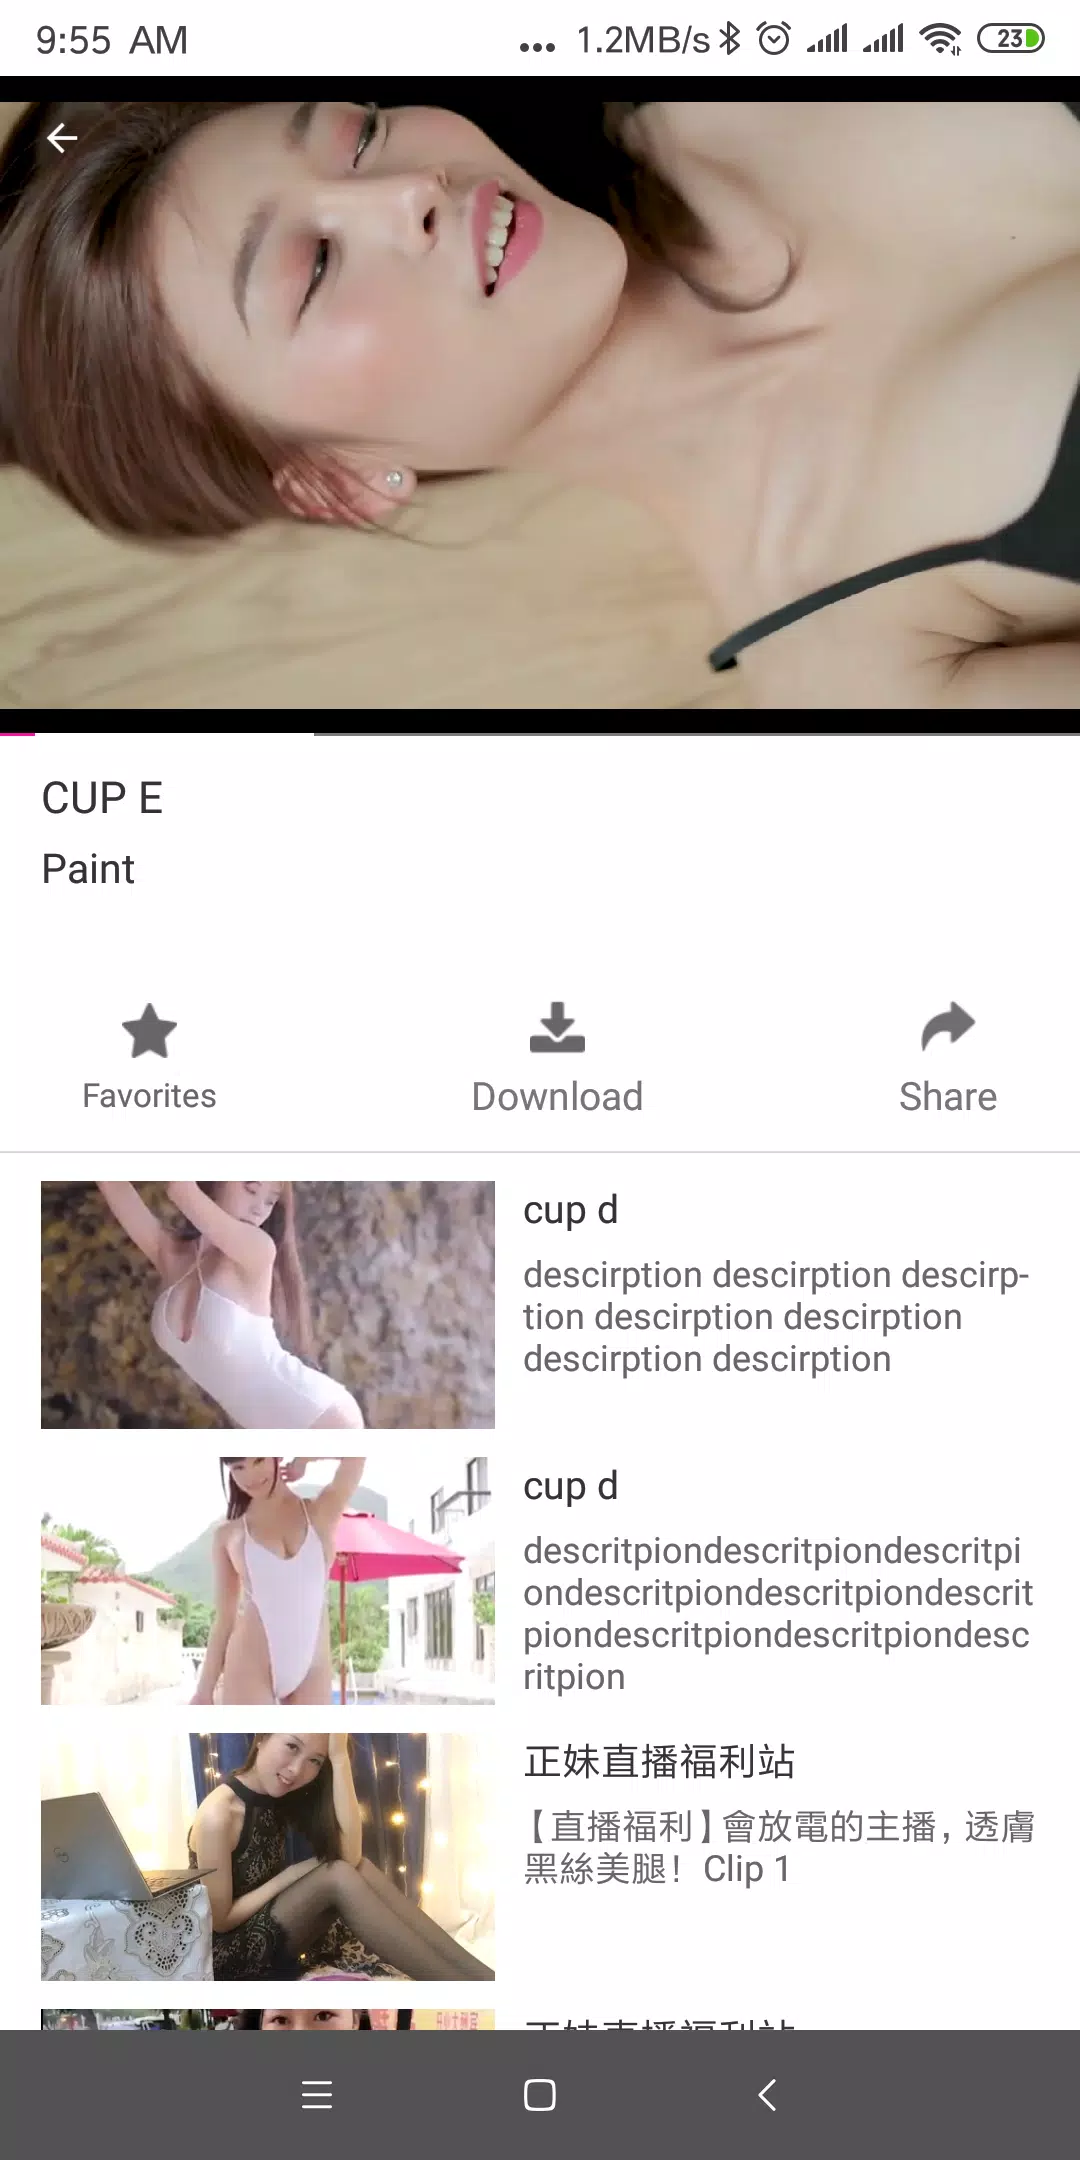 Tiny Video - Sexy & exciting short video APK für Android herunterladen